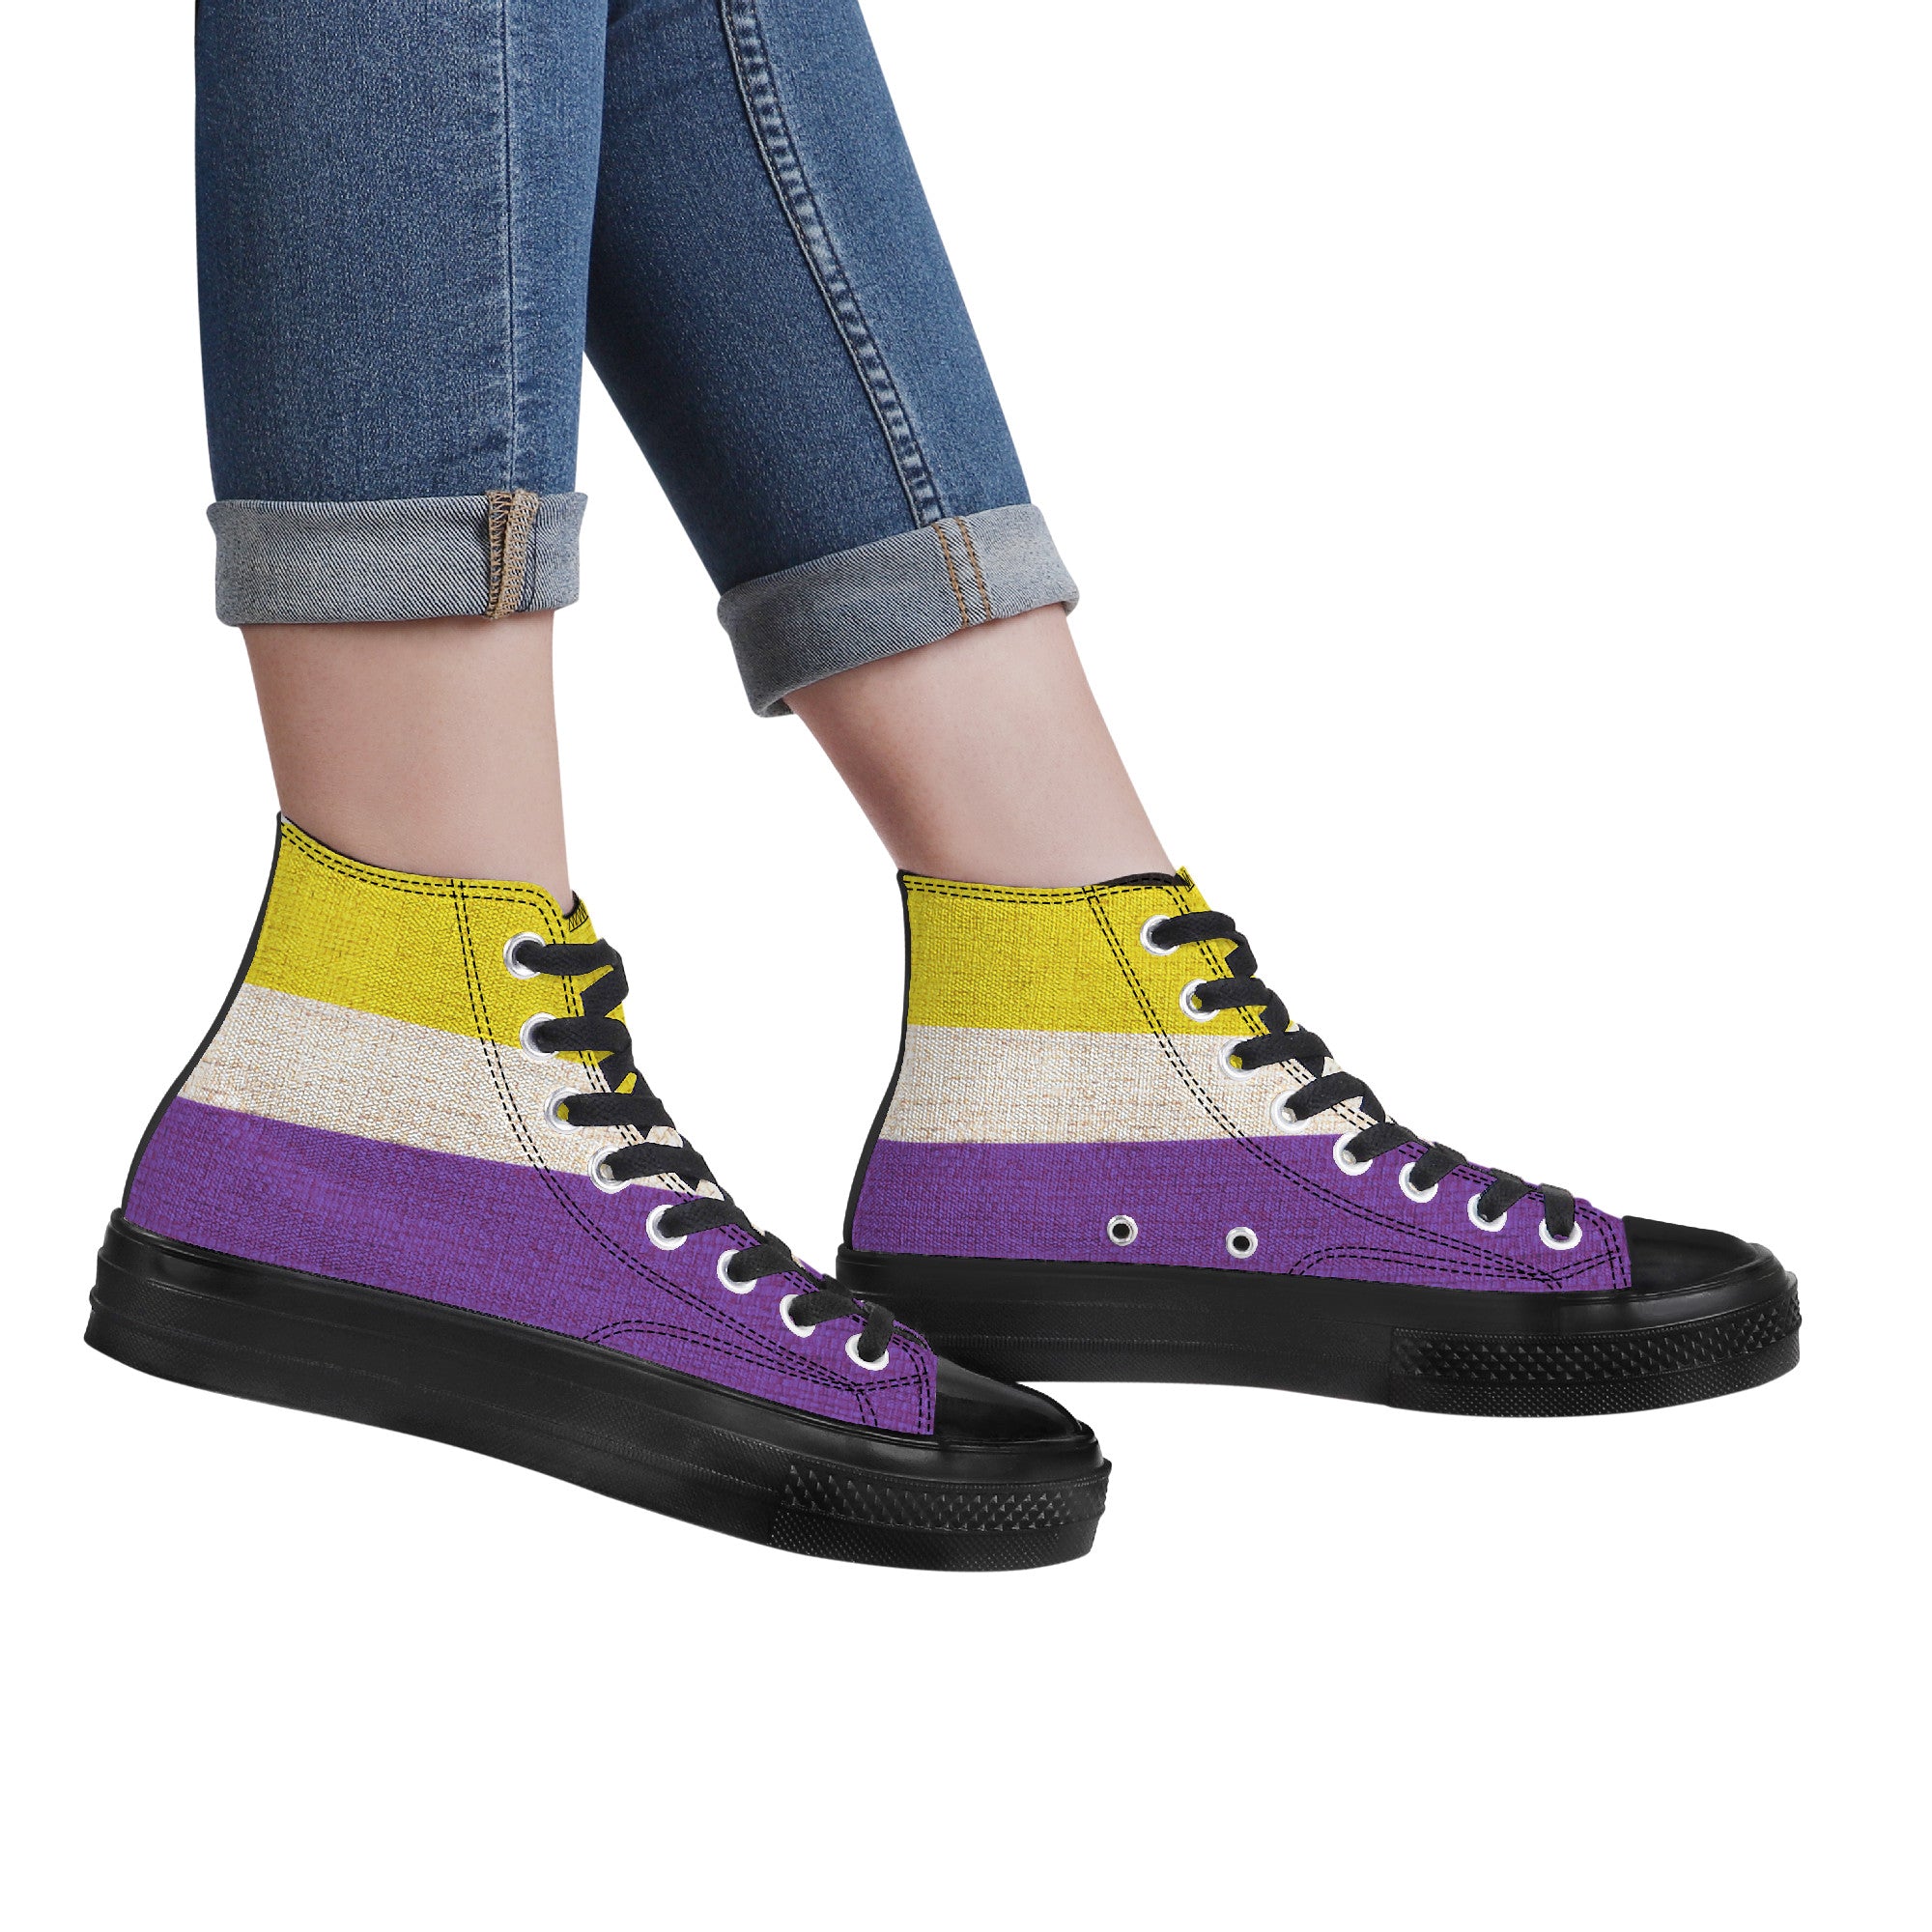 Cool shoes by Gayla Fox | Black High Top Customized | Shoe Zero